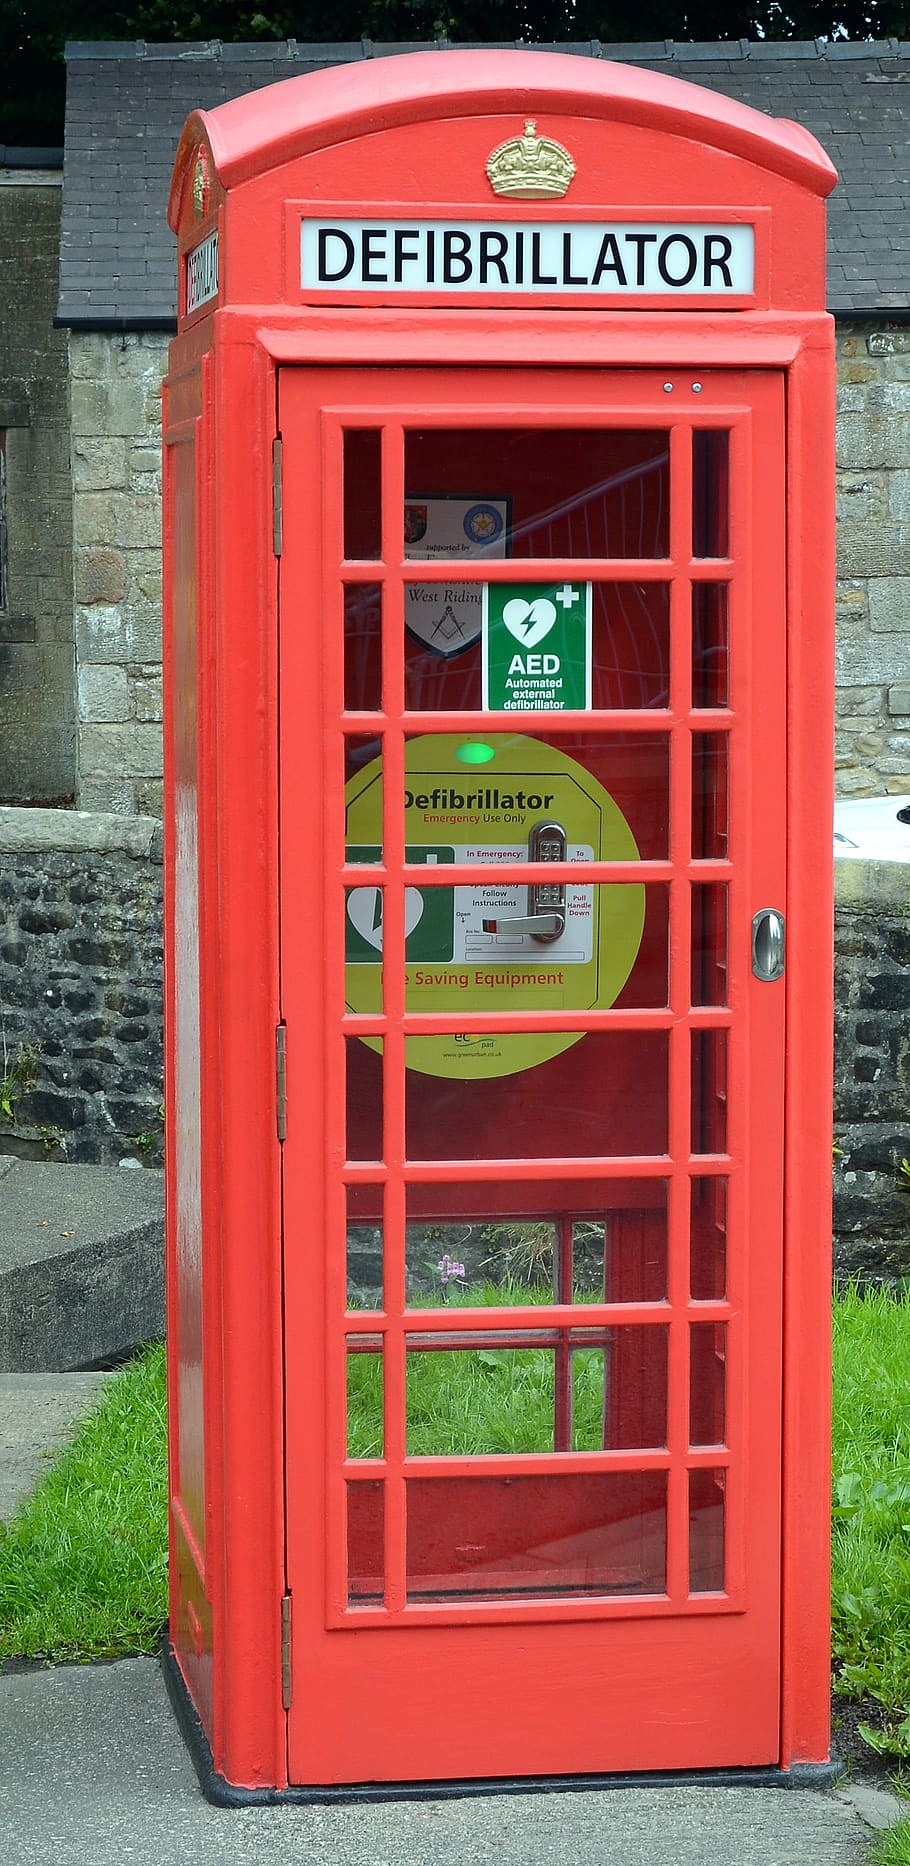 defibrillator, telepon, di luar rumah, klasik, Nostalgia, Inggris, retro, model tahun, penggunaan baru, medis